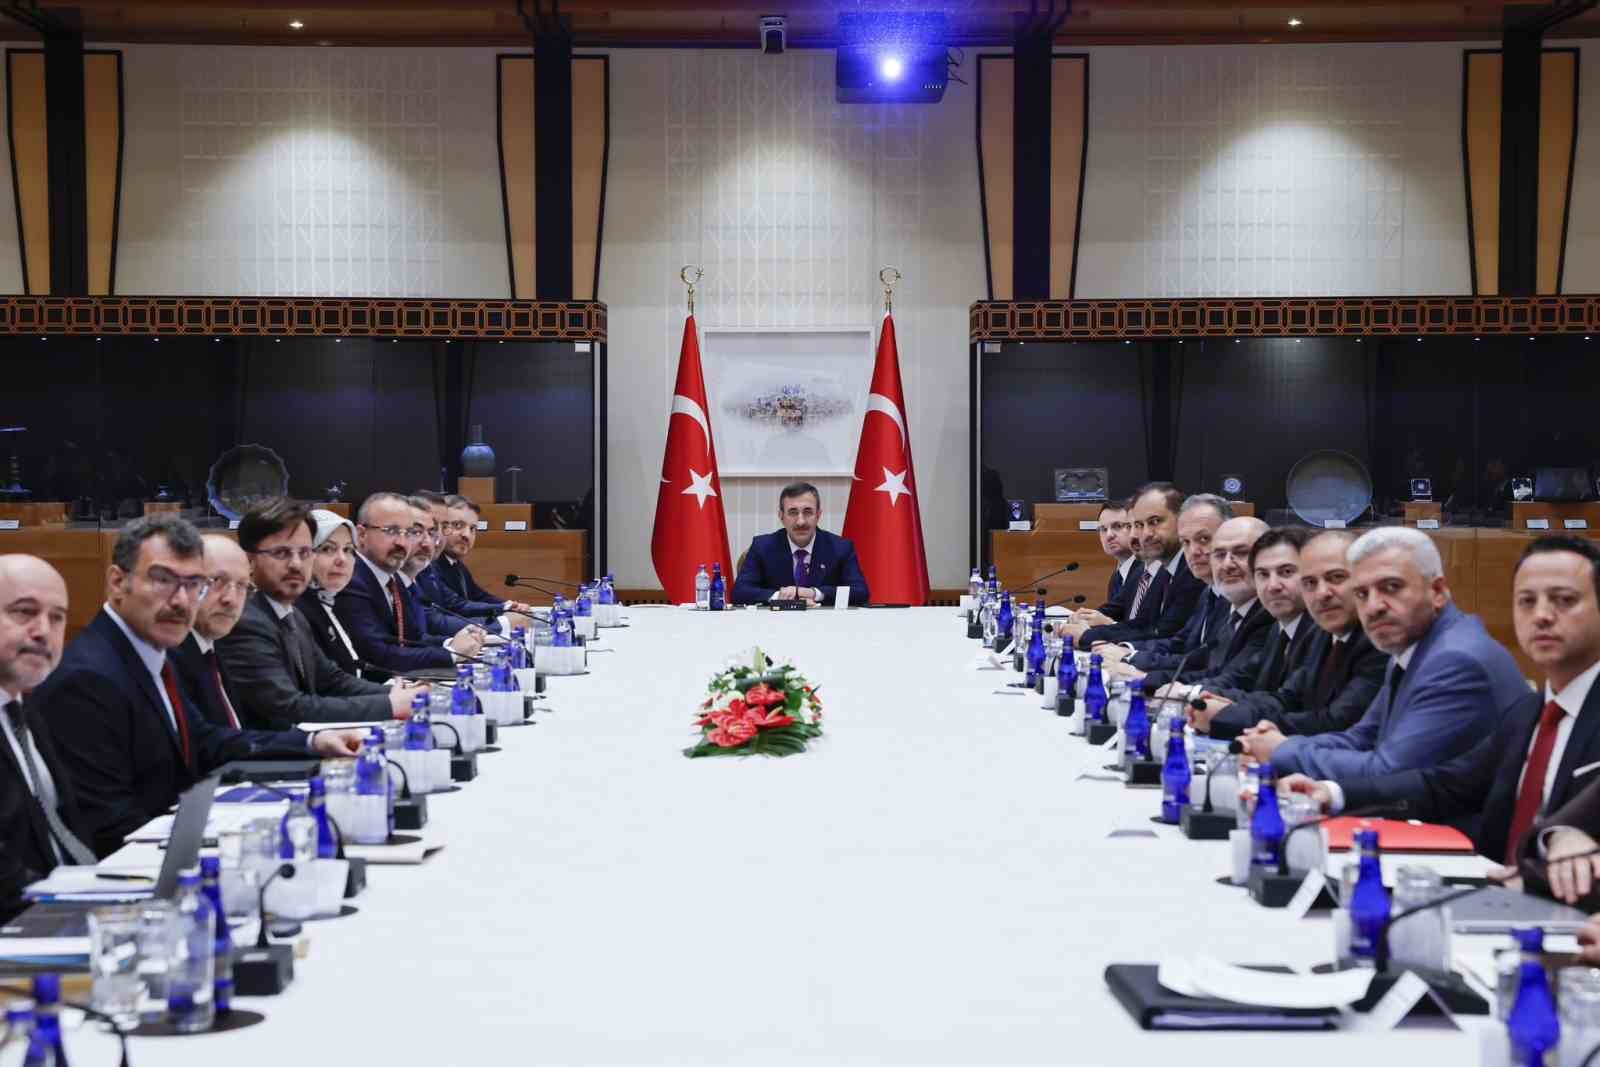 Cumhurbaşkanı Yardımcısı Yılmaz: “Türkiye’nin yerli yapay zeka çözümleriyle hem yerel hem de küresel ölçekte rekabet gücünü artırmasını istiyoruz&quot;